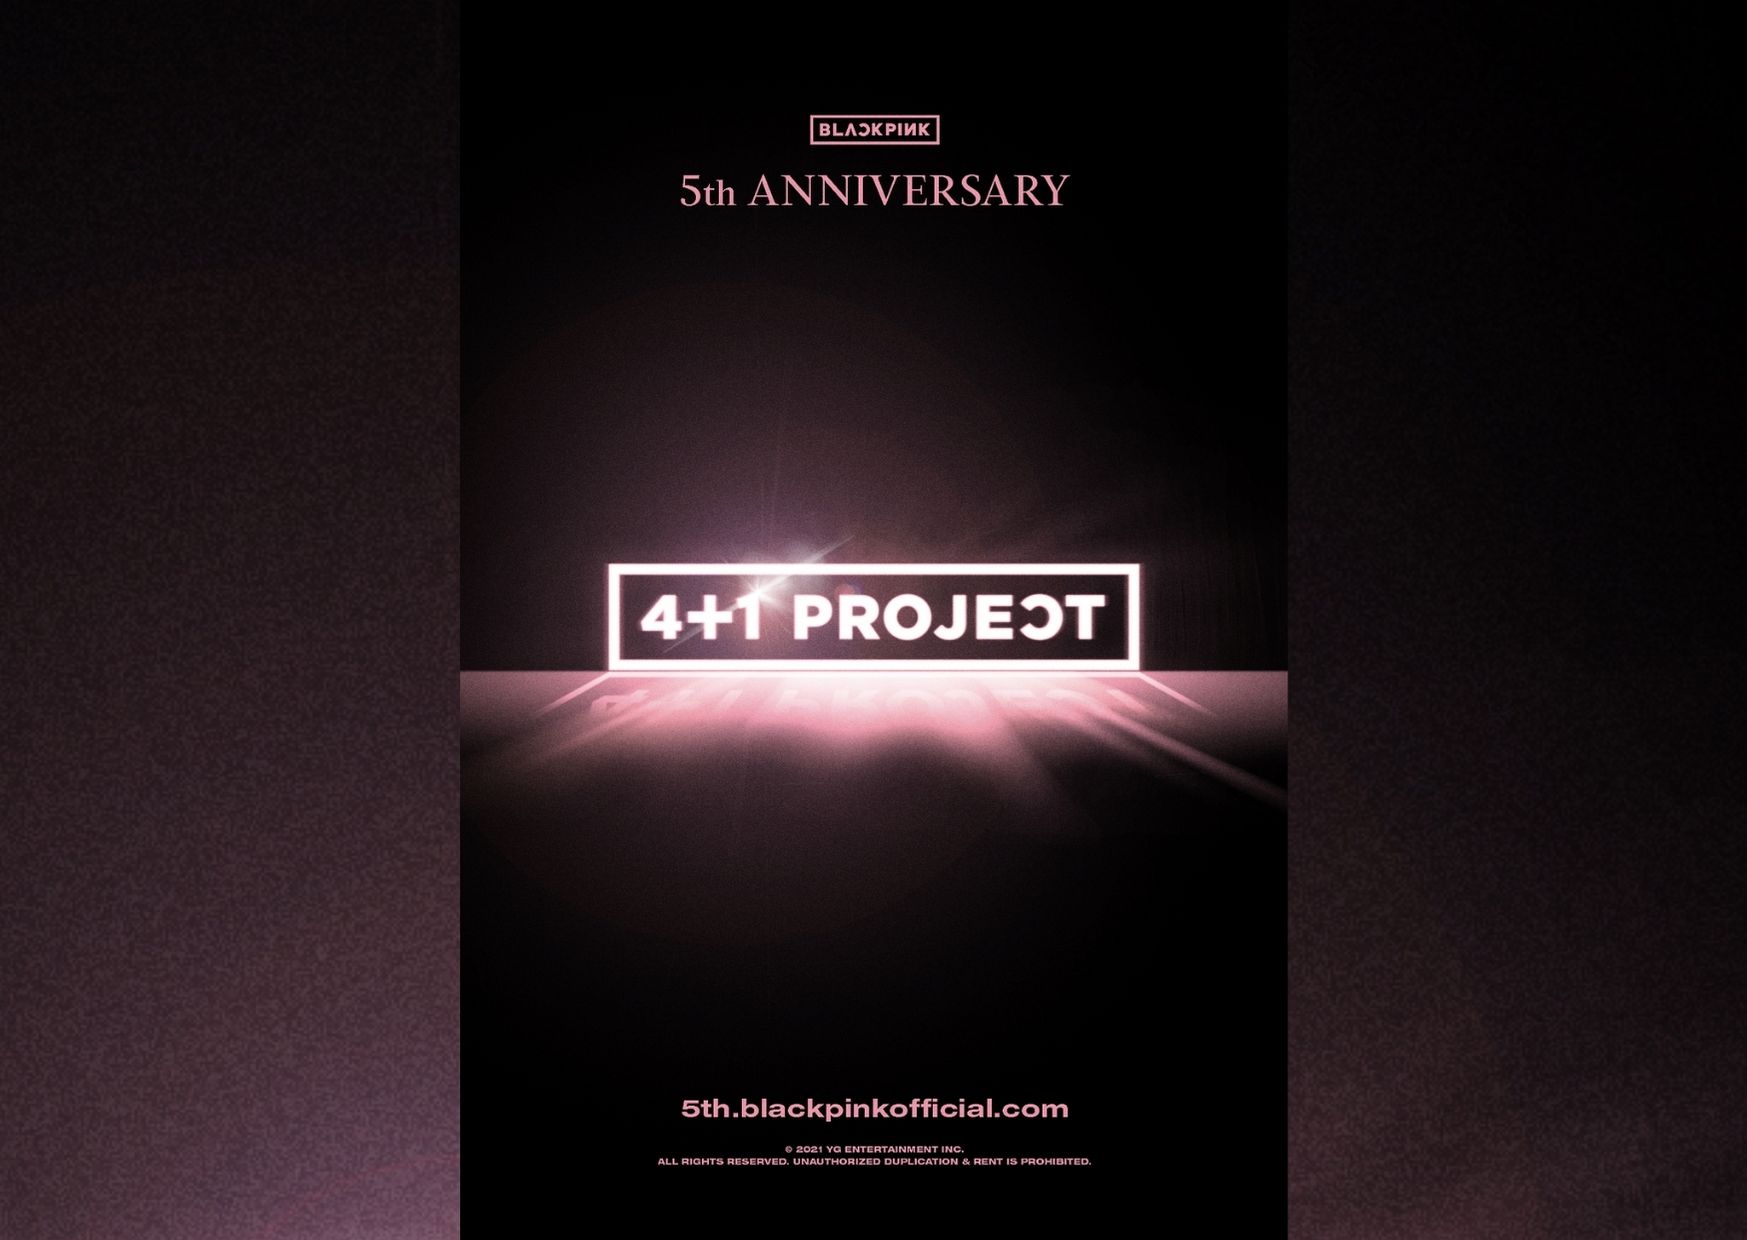 Blackpink Merayakan 5th Anniversary Dengan 4+1 Project